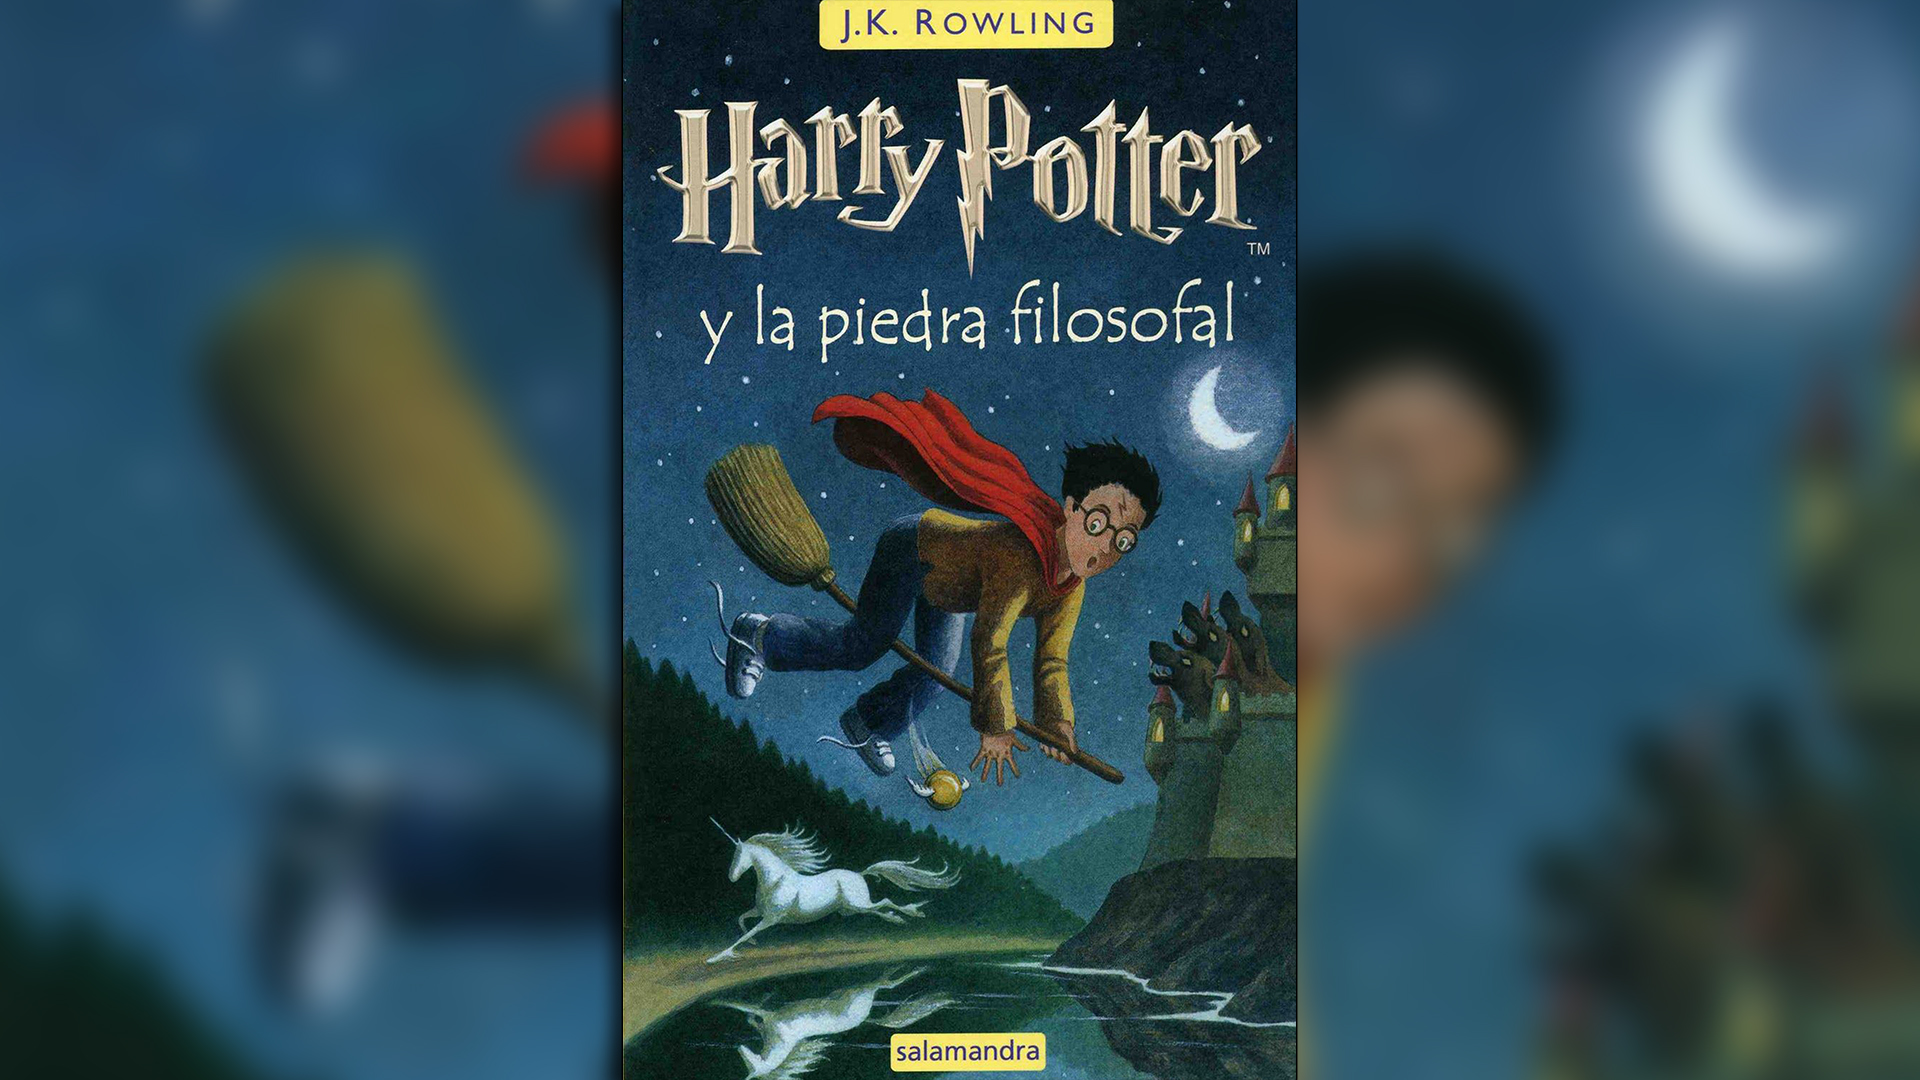 El mundo mágico de Harry Potter fue creado por la serie de novelas escritas por Jk Rolling